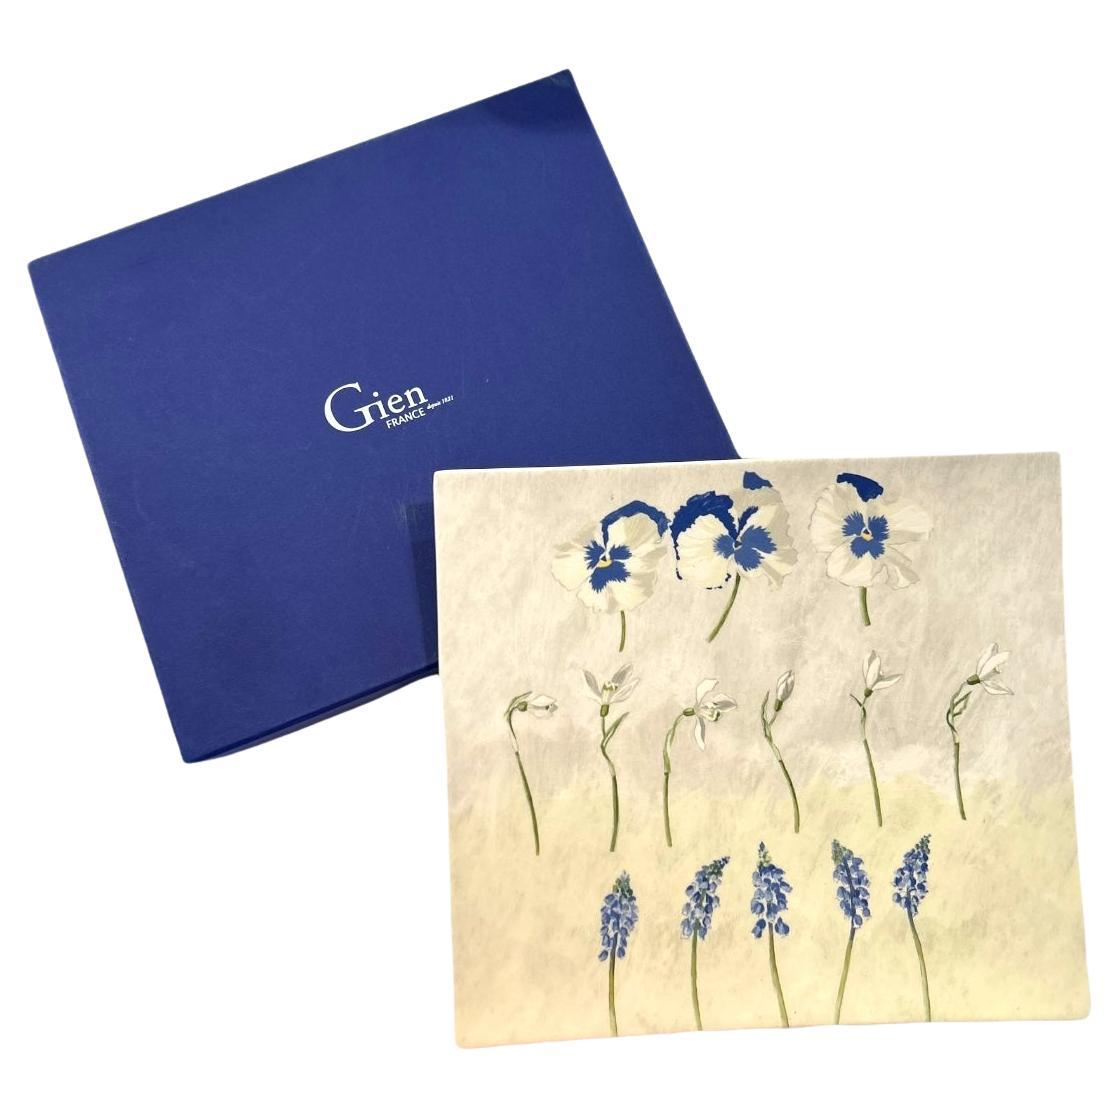 Vintage Faiencerie De Gien “Alice” Medium Sq. Floral Serving Dish w/Original Box For Sale